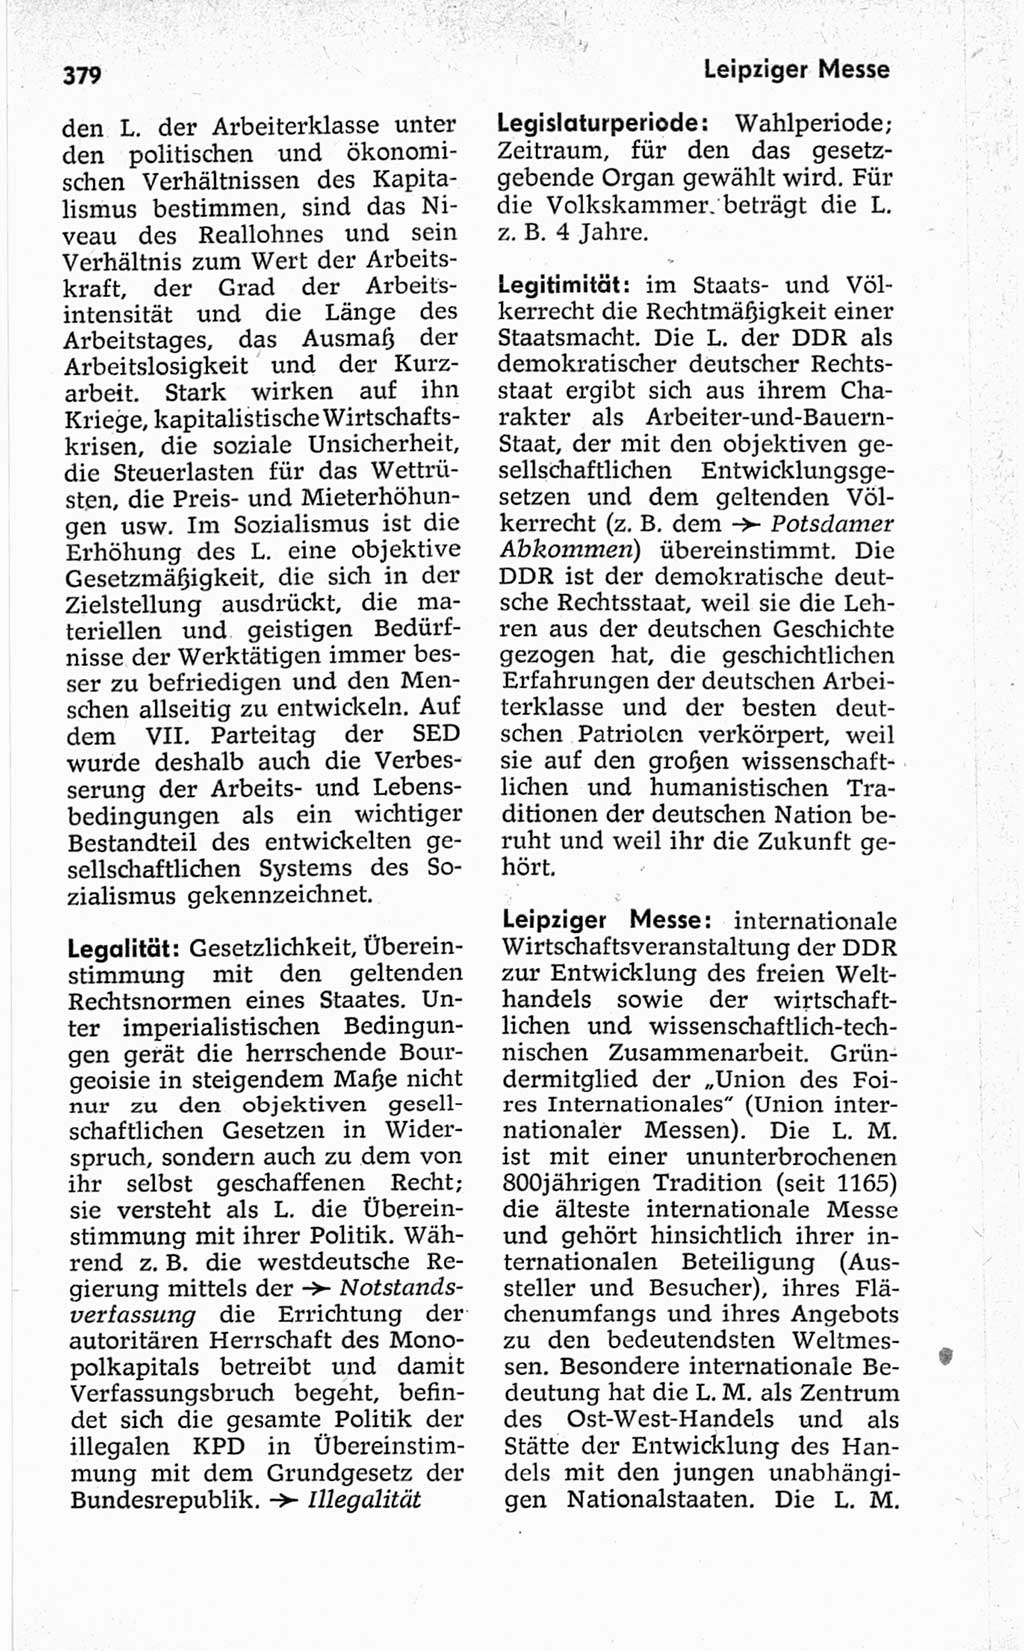 Kleines politisches Wörterbuch [Deutsche Demokratische Republik (DDR)] 1967, Seite 379 (Kl. pol. Wb. DDR 1967, S. 379)